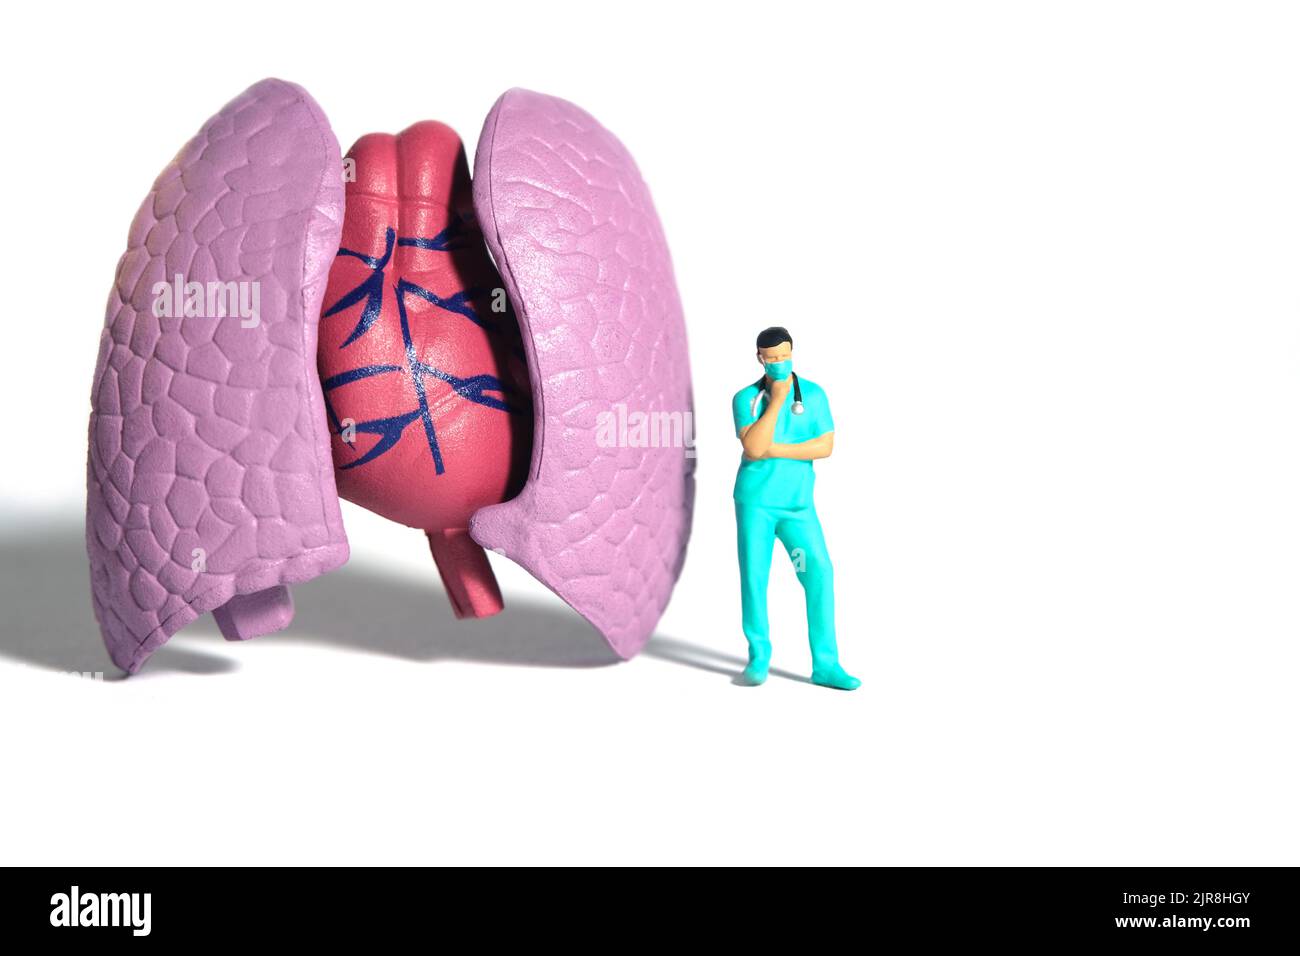 Miniatur Menschen Spielzeug Figur Fotografie. Ein Mann Arzt oder Krankenschwester denken, während vor der Lunge Organ stehen. Isolierter weißer Hintergrund. Bildfoto Stockfoto